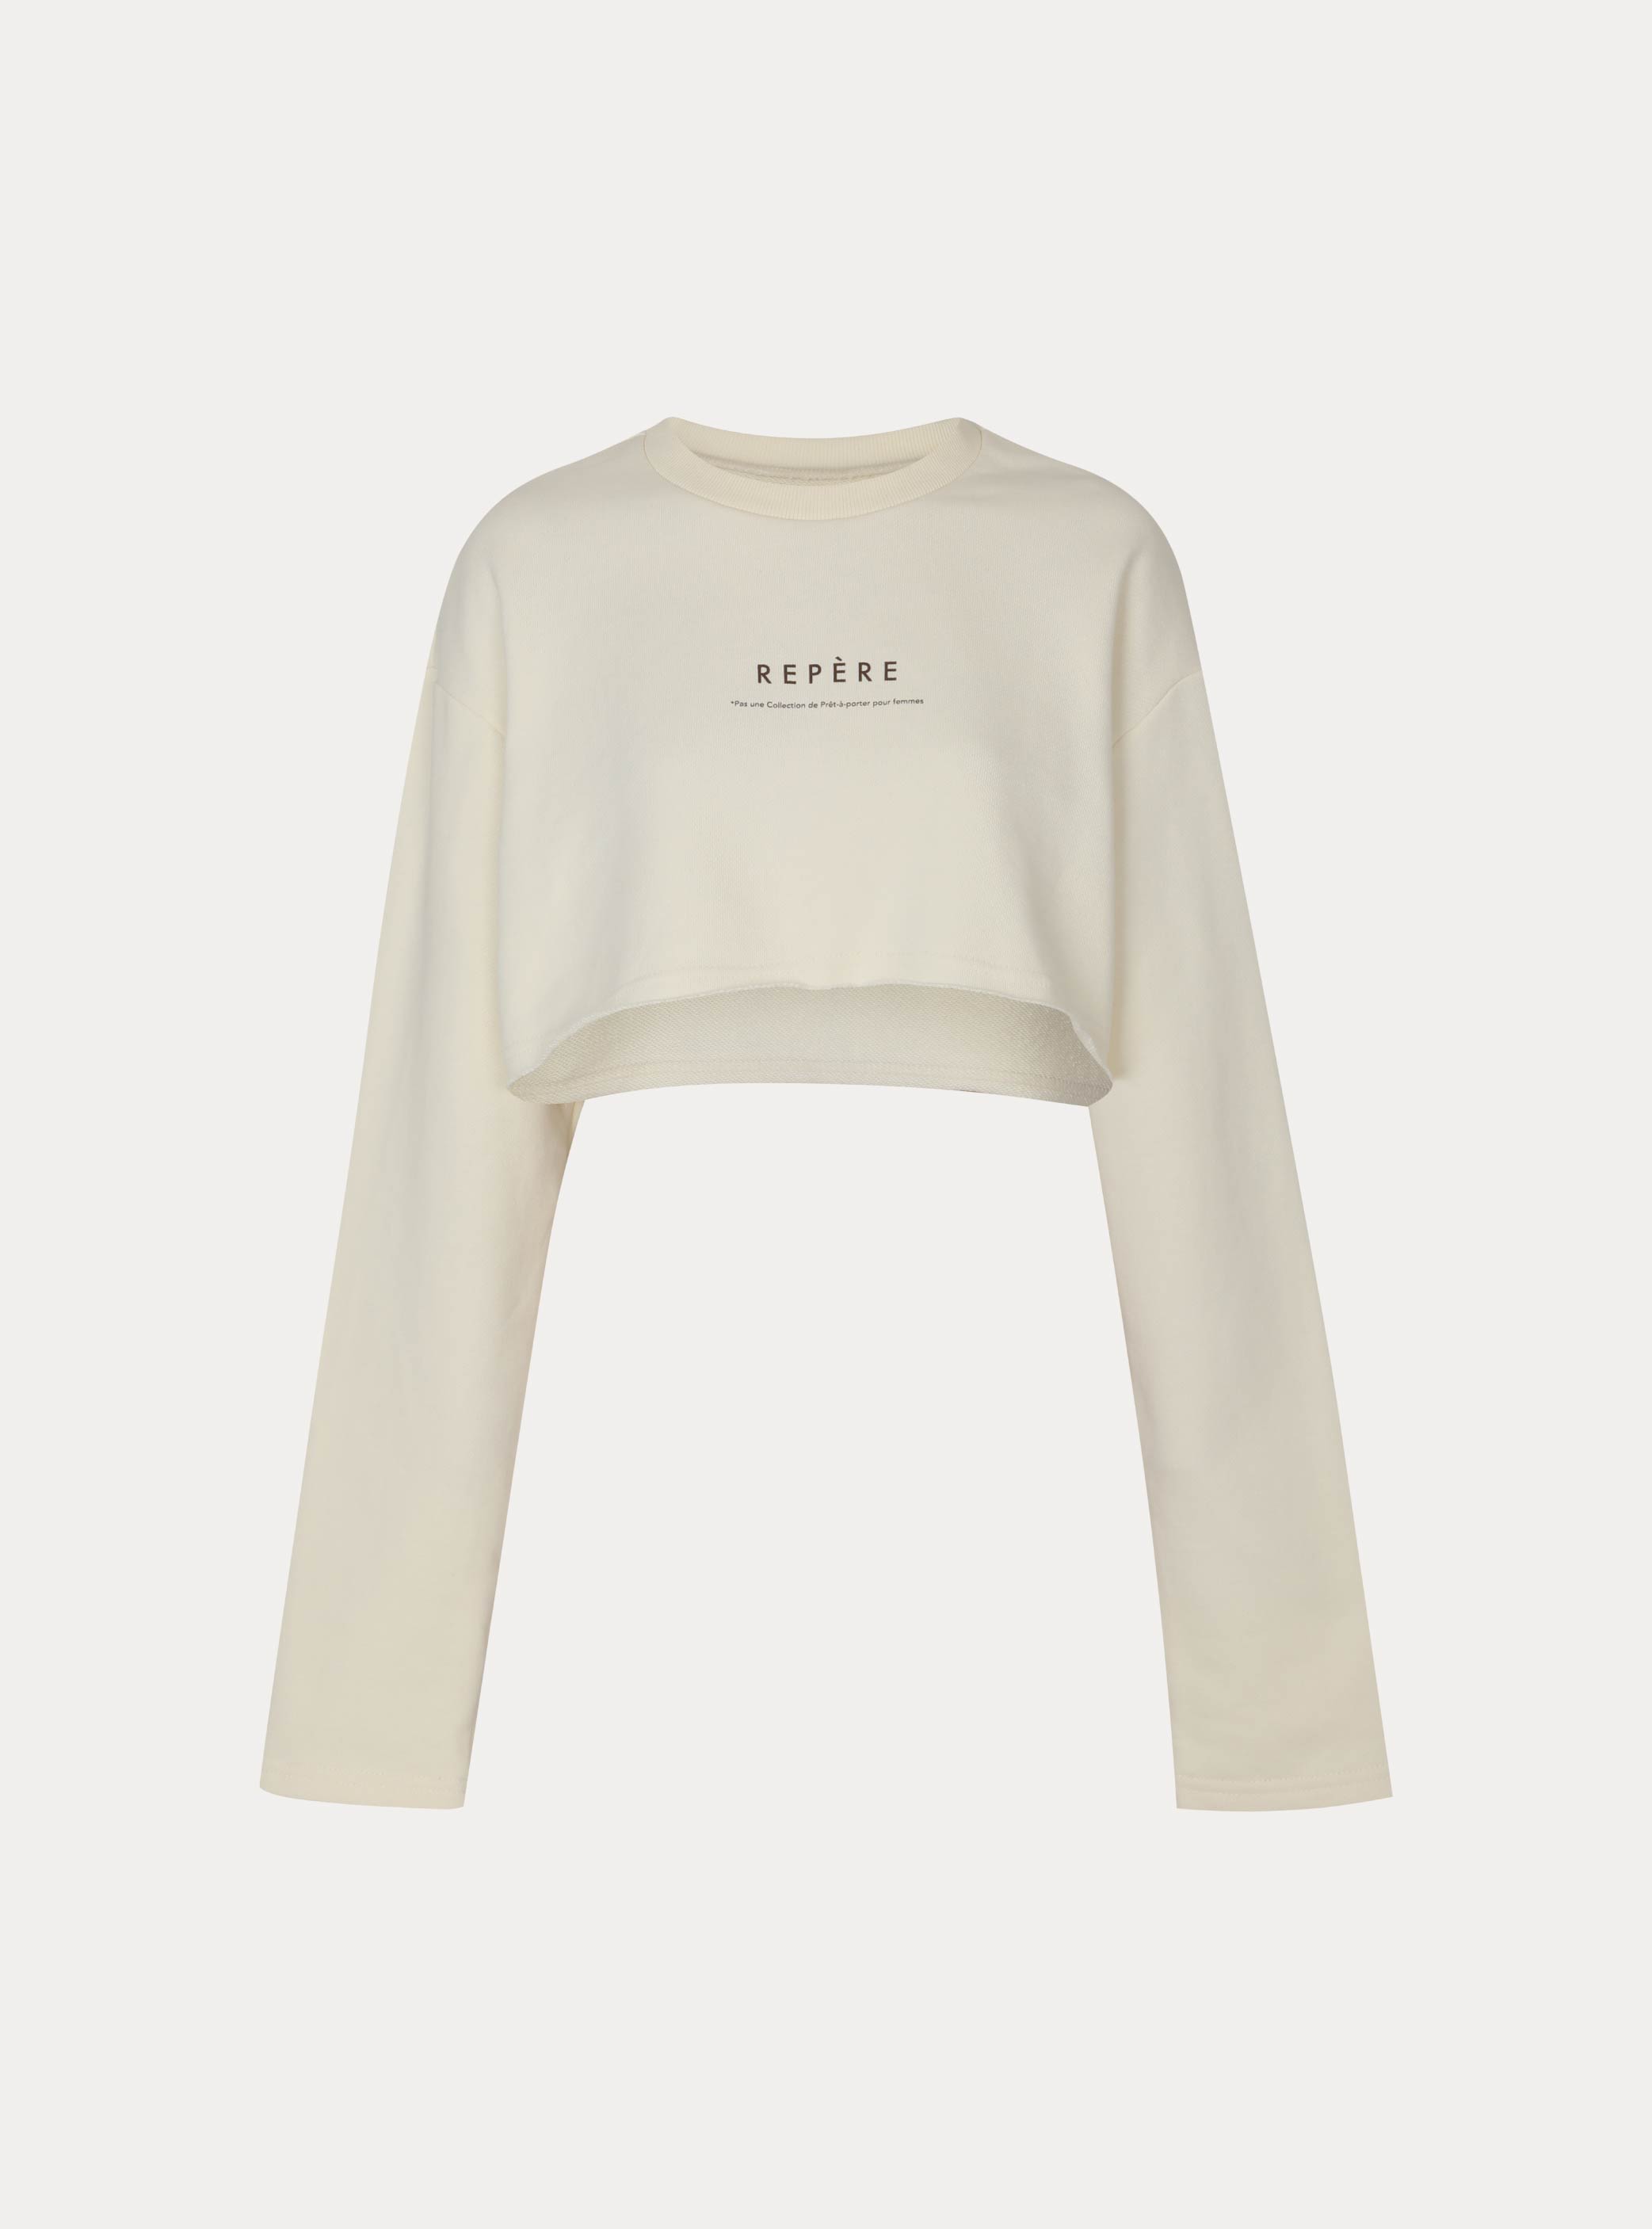 베티버 스웻셔츠  Vétiver sweatshirt (3color)